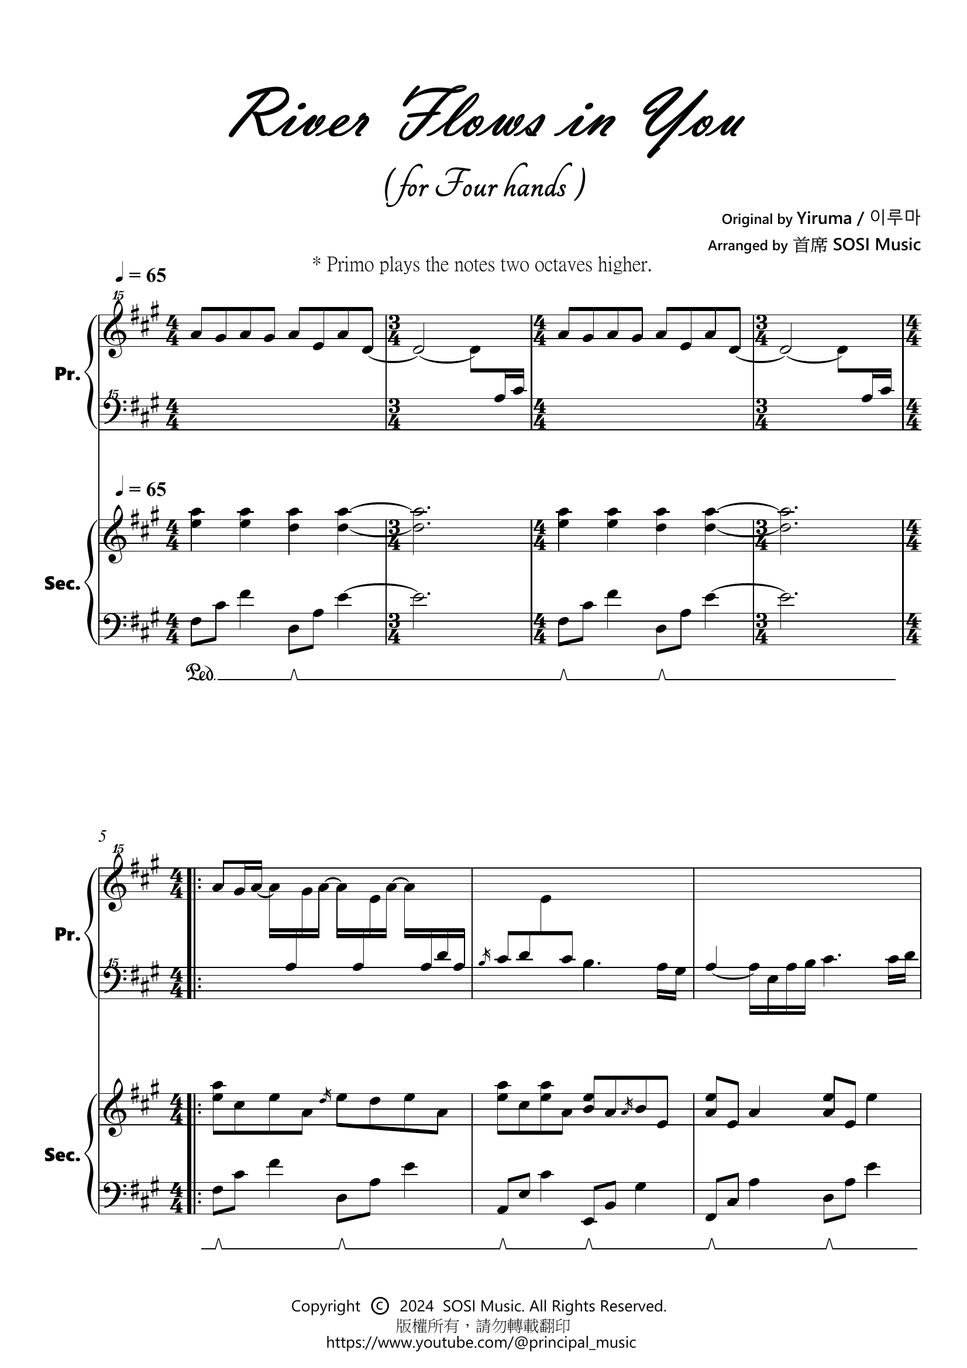 李闰珉 - River Flows in You (Four Hands Piano / Primo for Student / Secondo for Teacher｜Easy Version｜) by 首席 SOSI Music